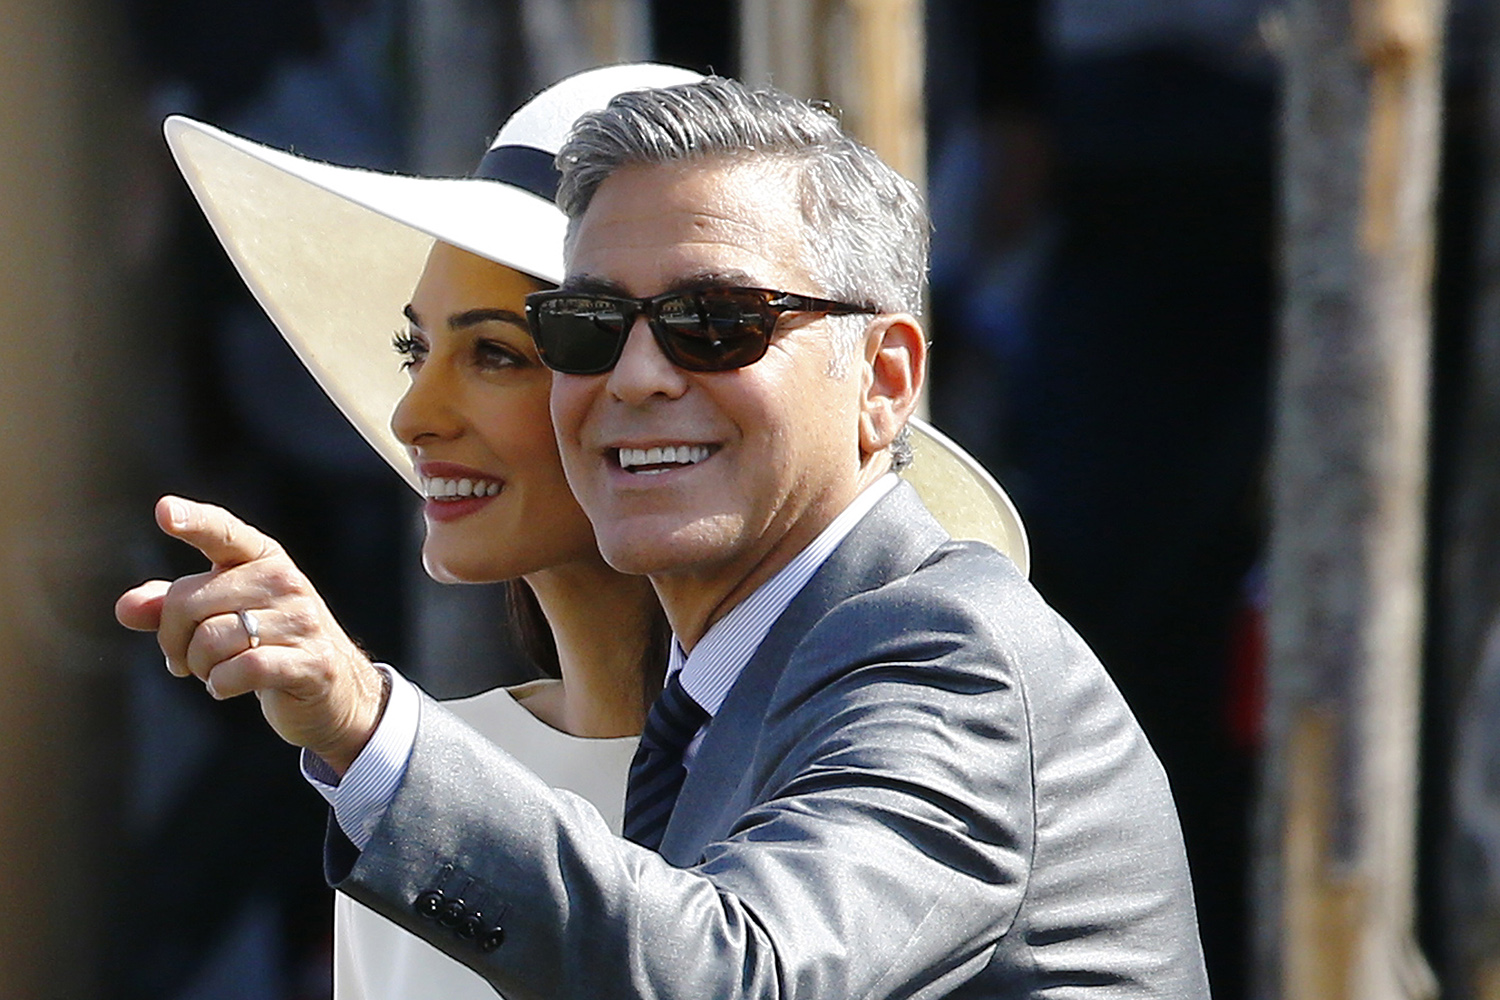 Una ley castiga a quien se acerque a la casa de George Clooney